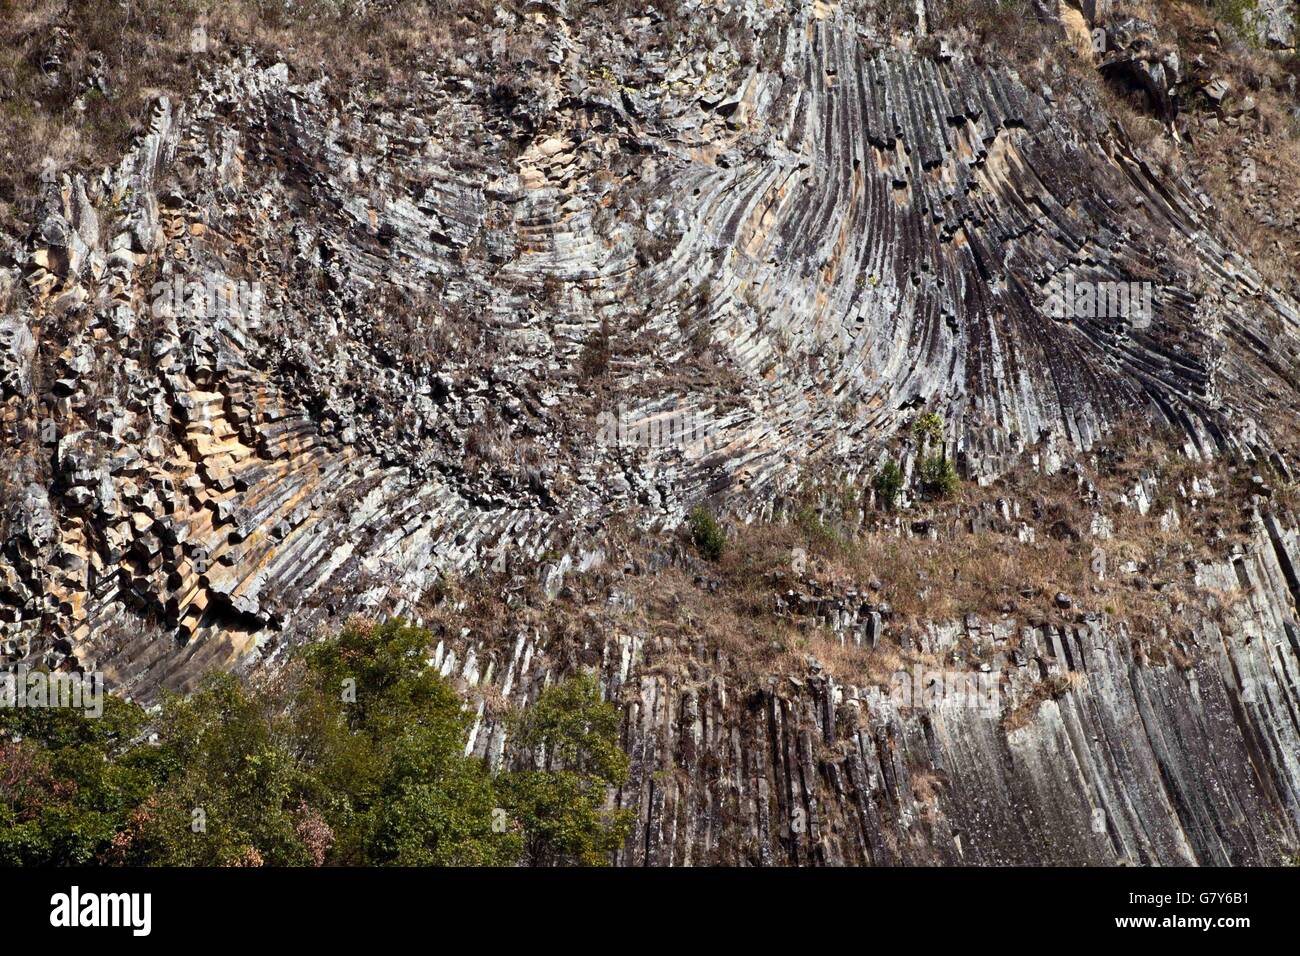 Tengchong, Tengchong, CHN. 13 Feb, 2016. Tengchong, China - El 13 de febrero de 2016: (Sólo para uso editorial. CHINA) engrapado columnar. Es una estructura geológica donde conjuntos de intersección fracturas poco espaciados, denominado juntas, dan como resultado la formación de una serie de prismas regulares poligonal, o columnas. Engrapado columnar ocurre en muchos tipos de rocas volcánicas y las formas como la roca se enfría y se contrae. Engrapado columnar puede ocurrir en los flujos de lava y refrigeración ashflow tobas (ignimbritas), así como en algunas intrusiones someras. © SIPA Asia/Zuma alambre/Alamy Live News Foto de stock